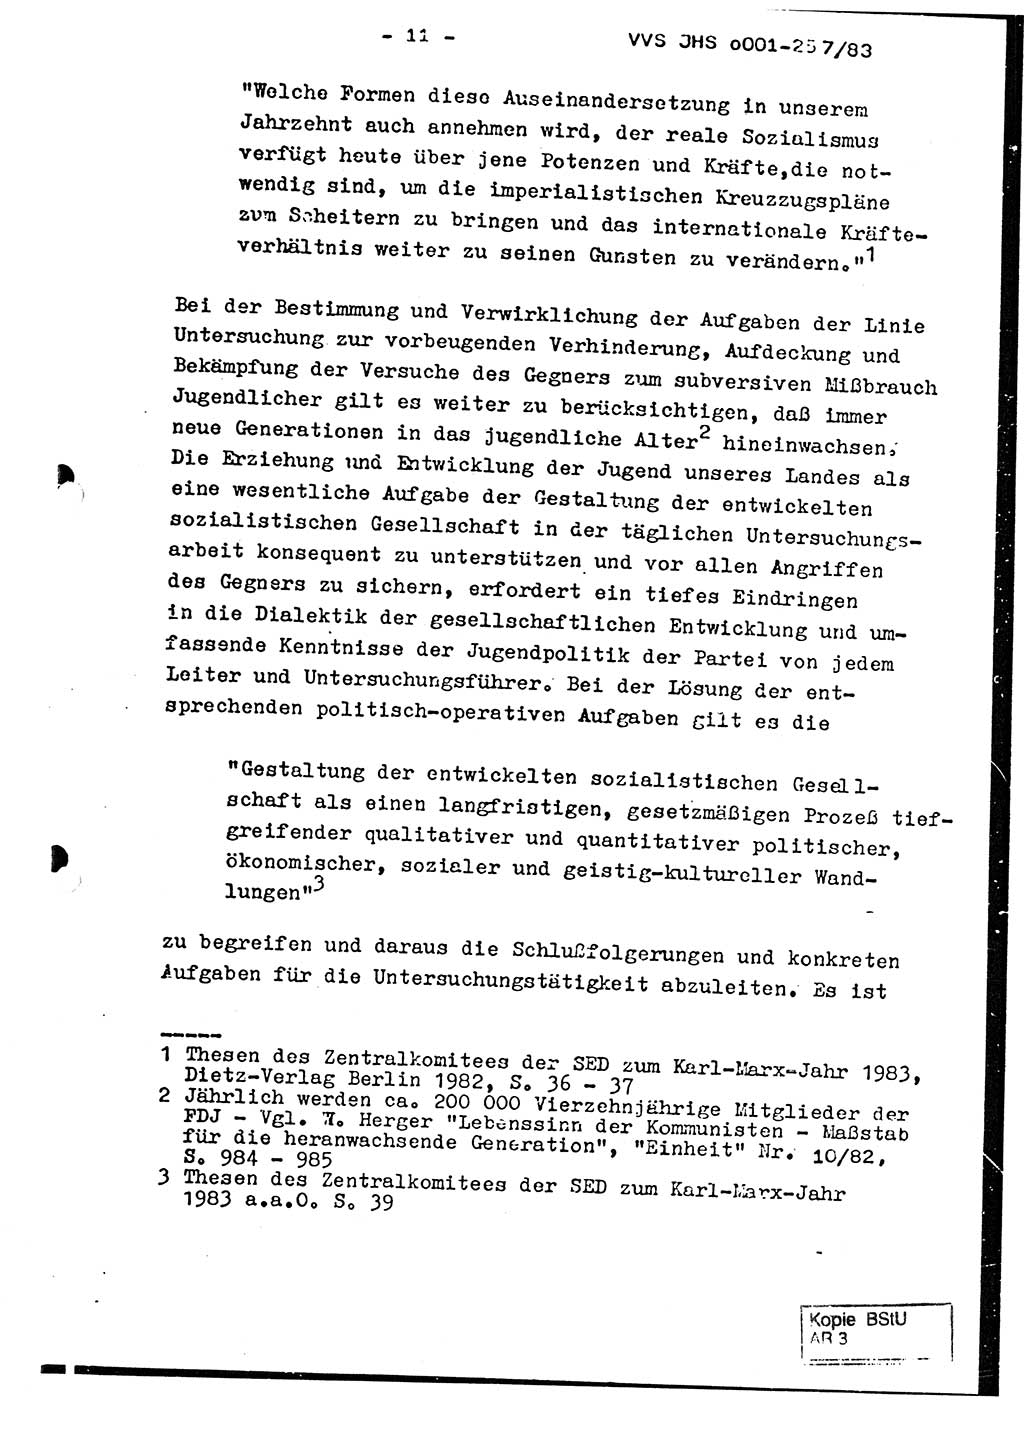 Dissertation, Oberst Helmut Lubas (BV Mdg.), Oberstleutnant Manfred Eschberger (HA IX), Oberleutnant Hans-Jürgen Ludwig (JHS), Ministerium für Staatssicherheit (MfS) [Deutsche Demokratische Republik (DDR)], Juristische Hochschule (JHS), Vertrauliche Verschlußsache (VVS) o001-257/83, Potsdam 1983, Seite 11 (Diss. MfS DDR JHS VVS o001-257/83 1983, S. 11)